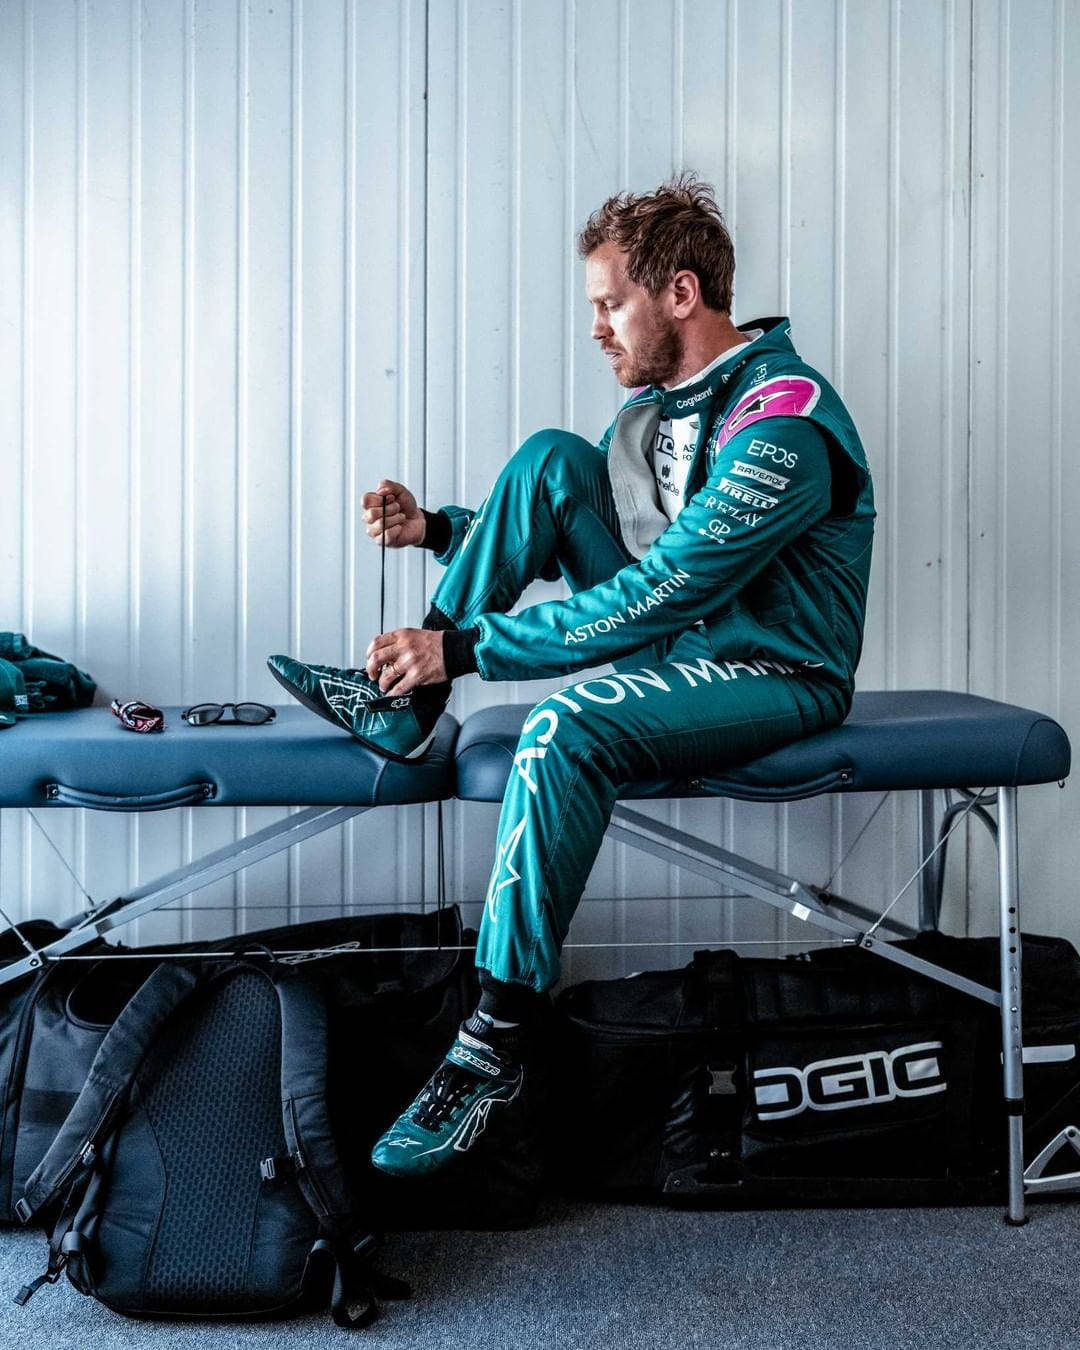 Caption: Sebastian Vettel Relaxing On A Bench